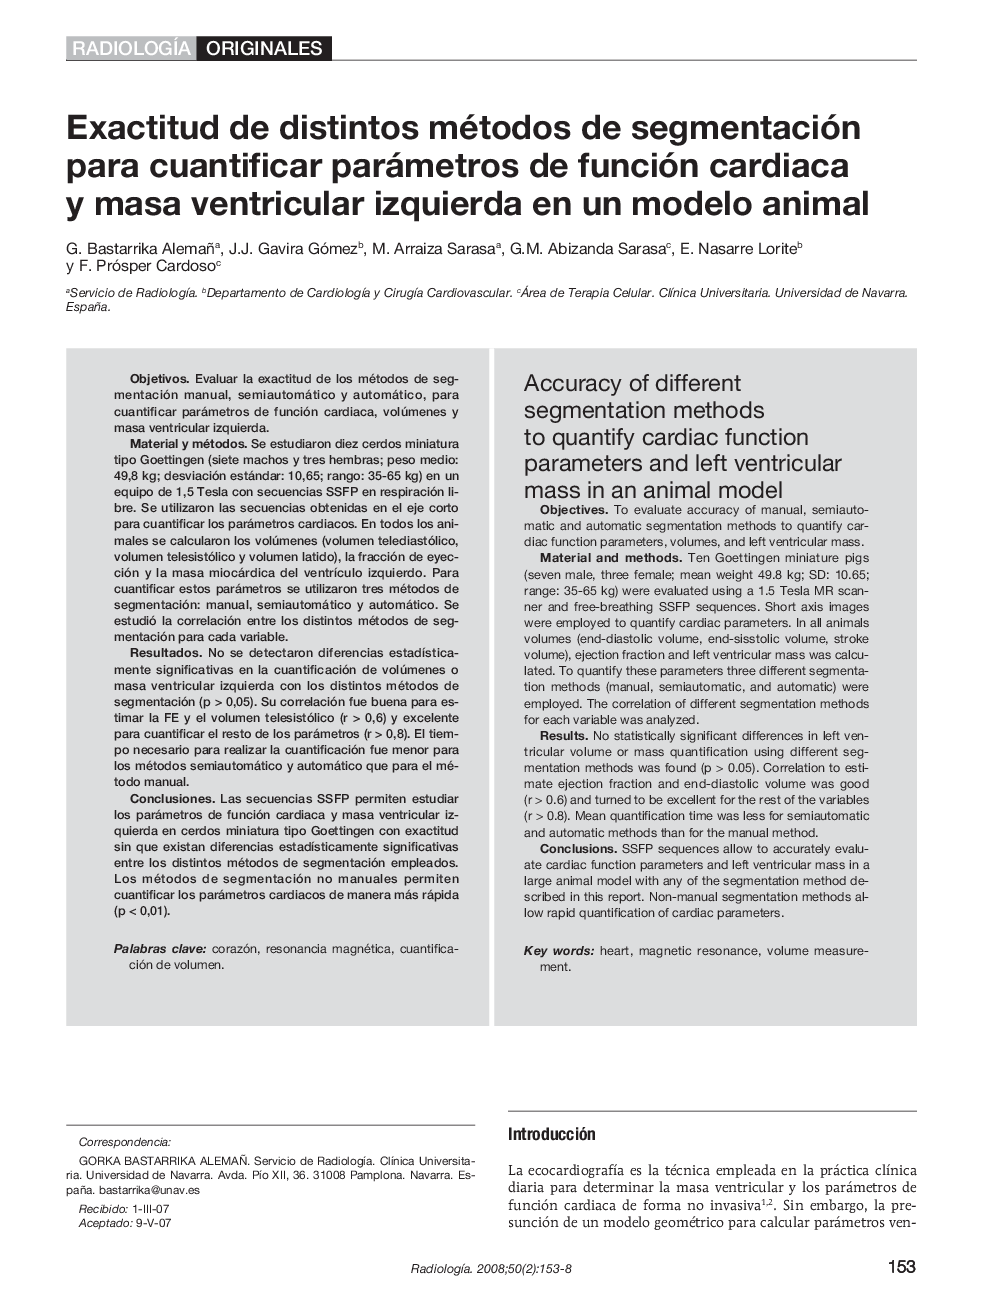 Exactitud de distintos métodos de segmentación para cuantificar parámetros de función cardiaca y masa ventricular izquierda en un modelo animal